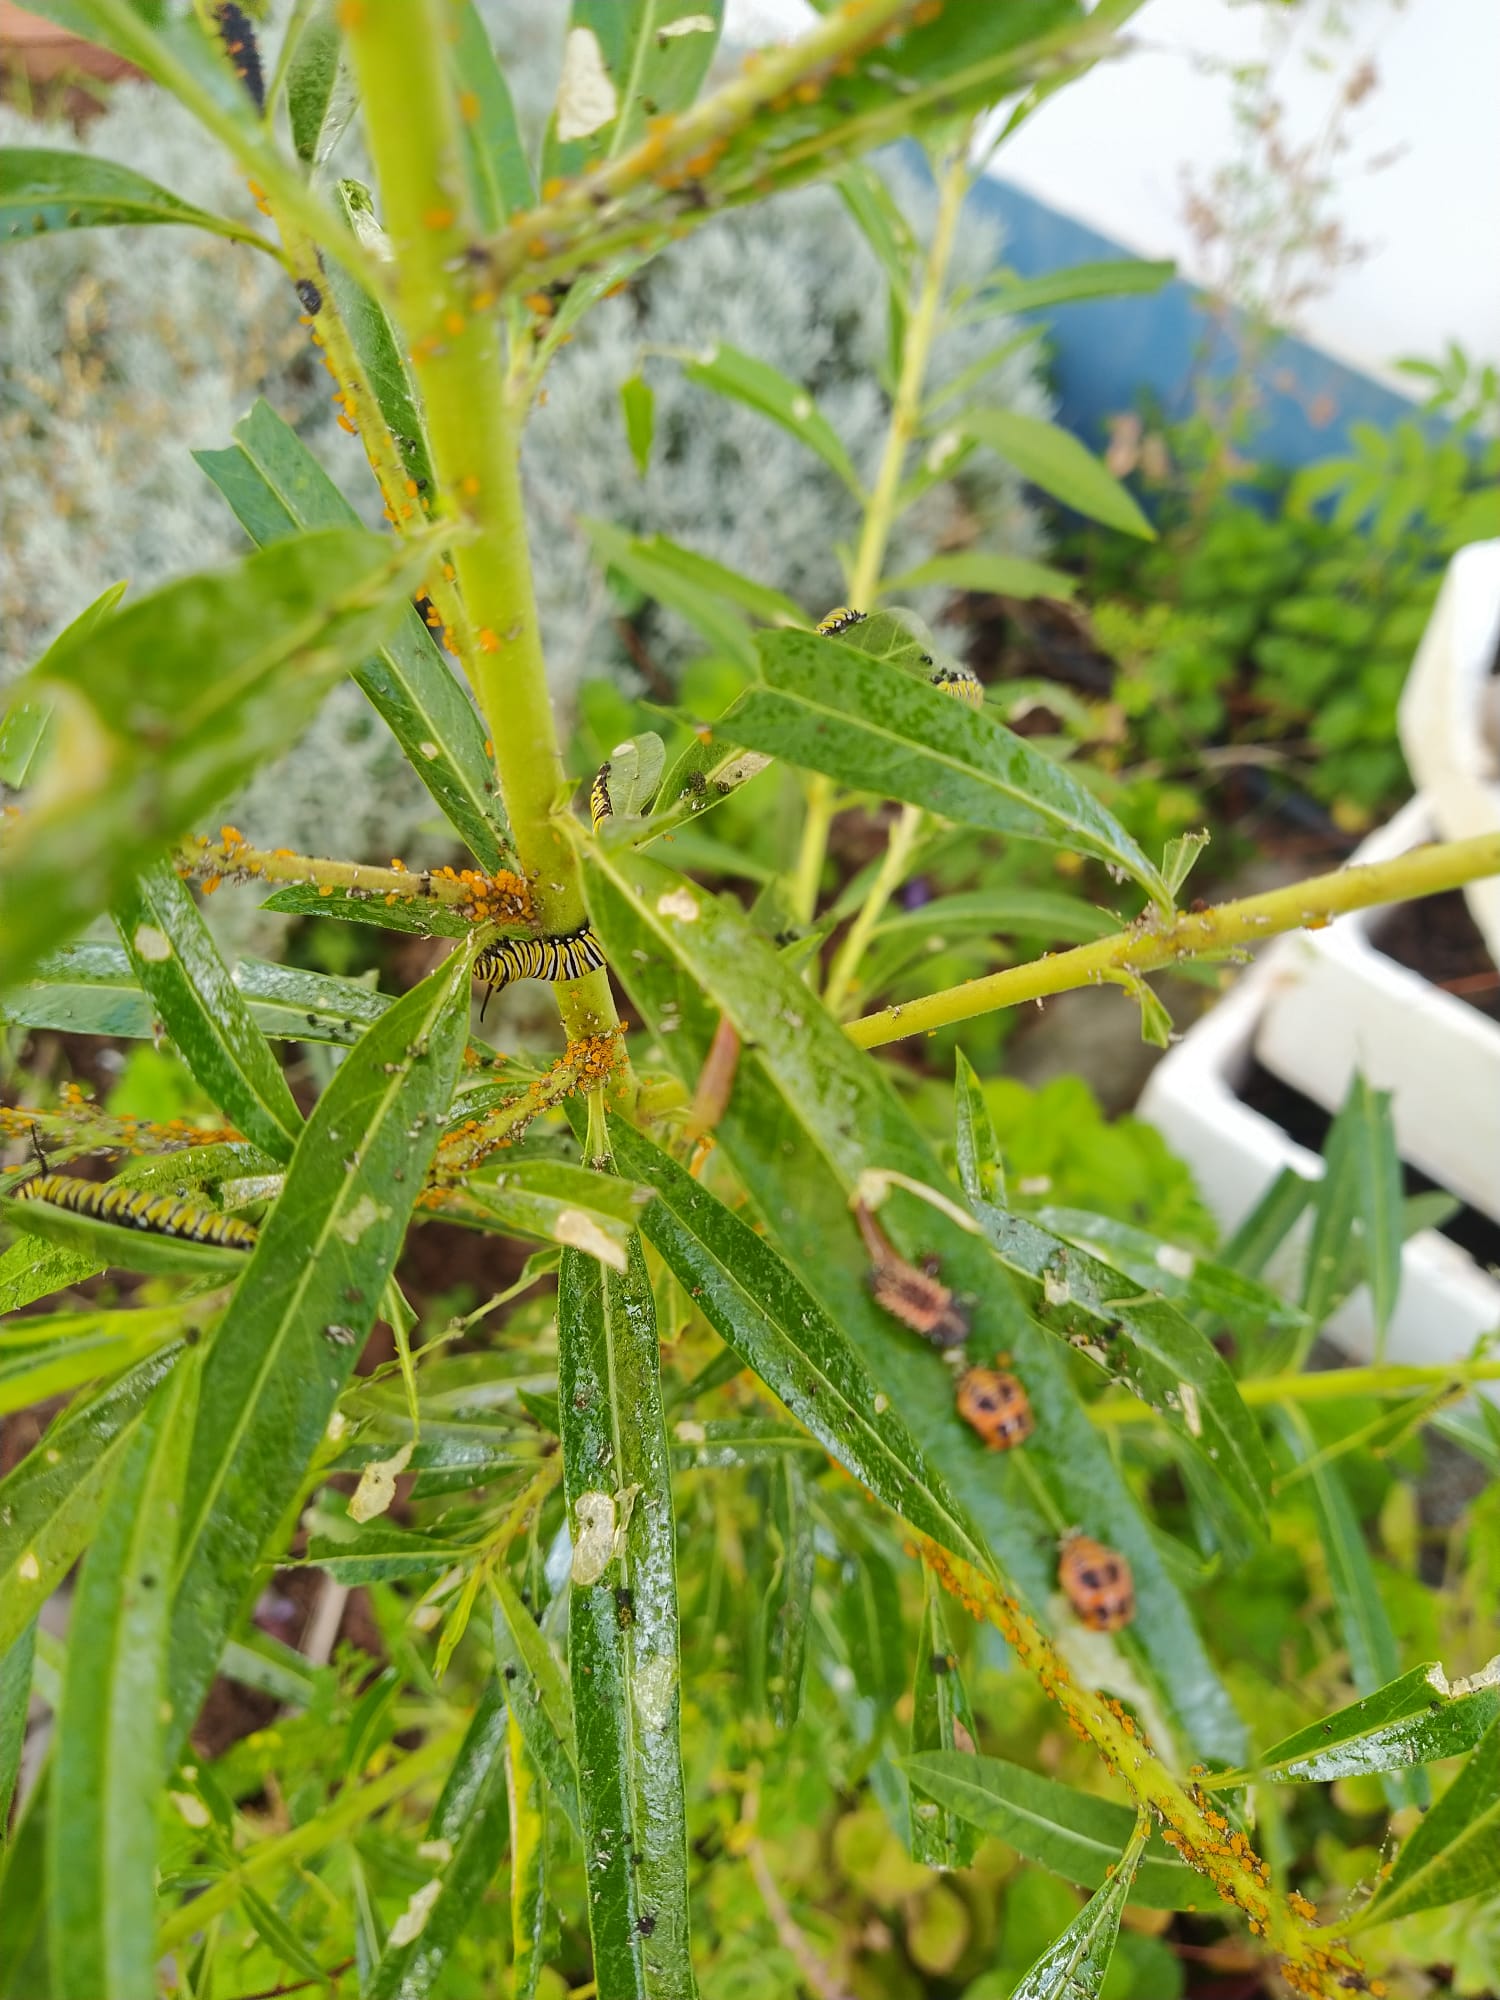 Planta da Seda com lagartas da Borboleta-monarca e joaninhas alimentando-se dos afídeos.